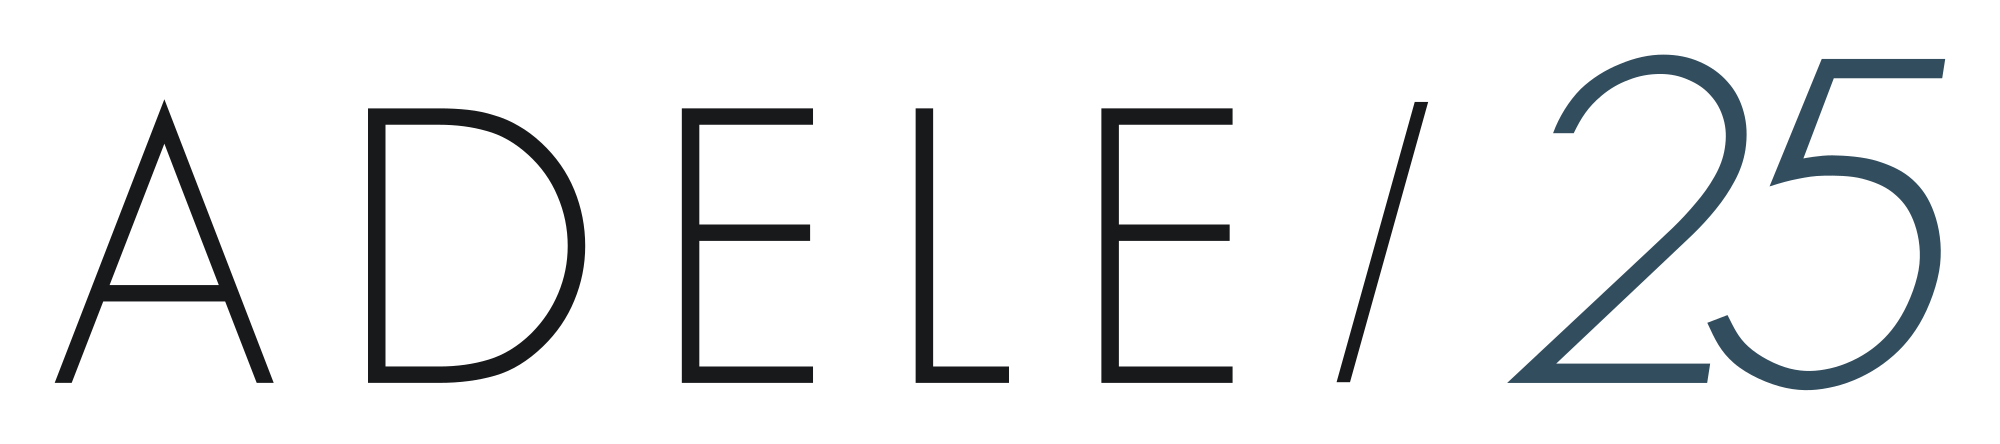 Adele logo